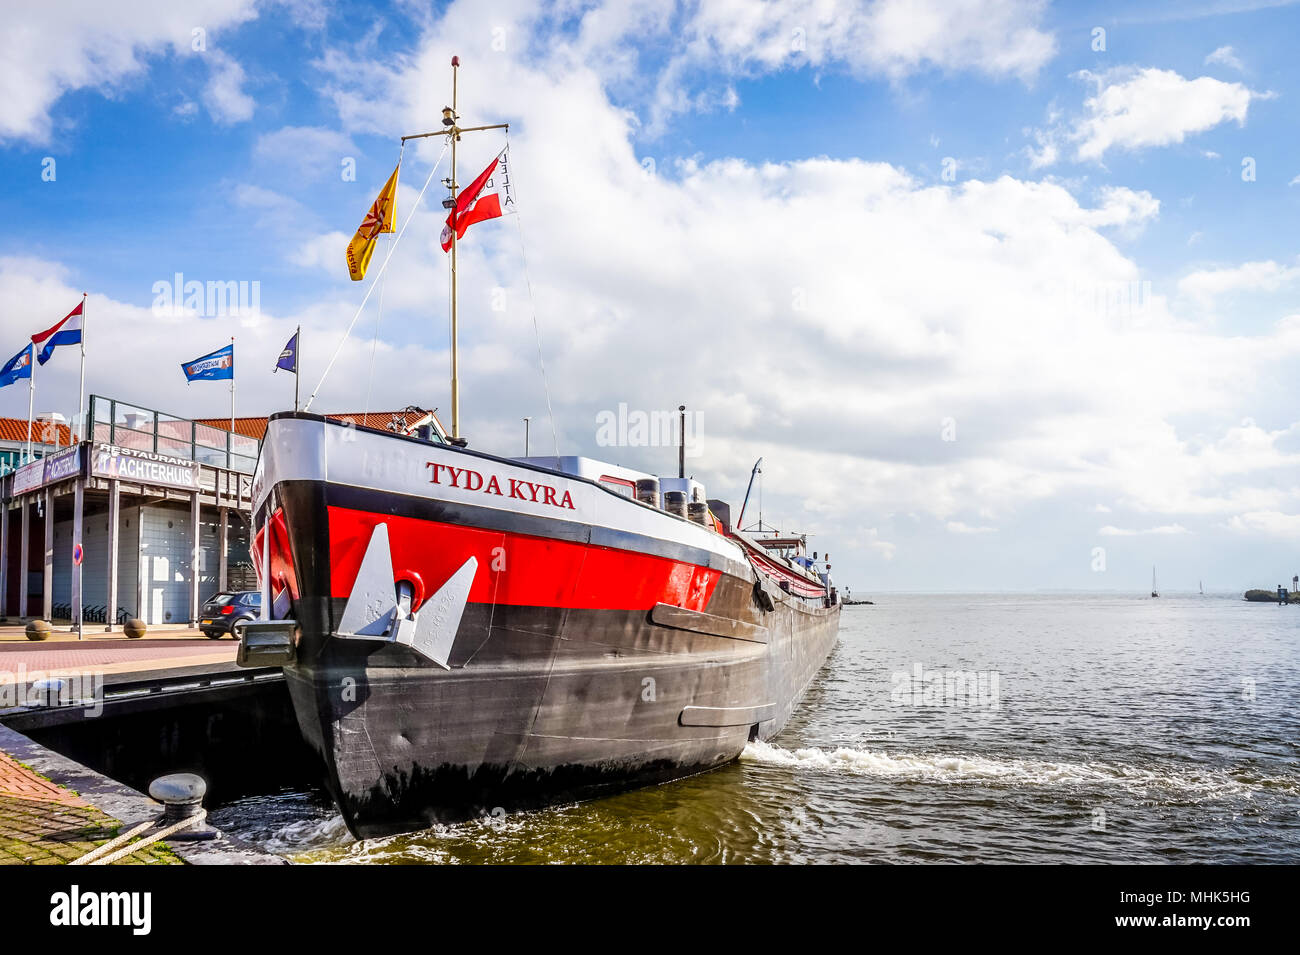 Una escena típica de un gran barco de pesca holandés utilizado para pescar en alta mar en el Mar del Norte frente a las costas de los Países Bajos. Foto de stock